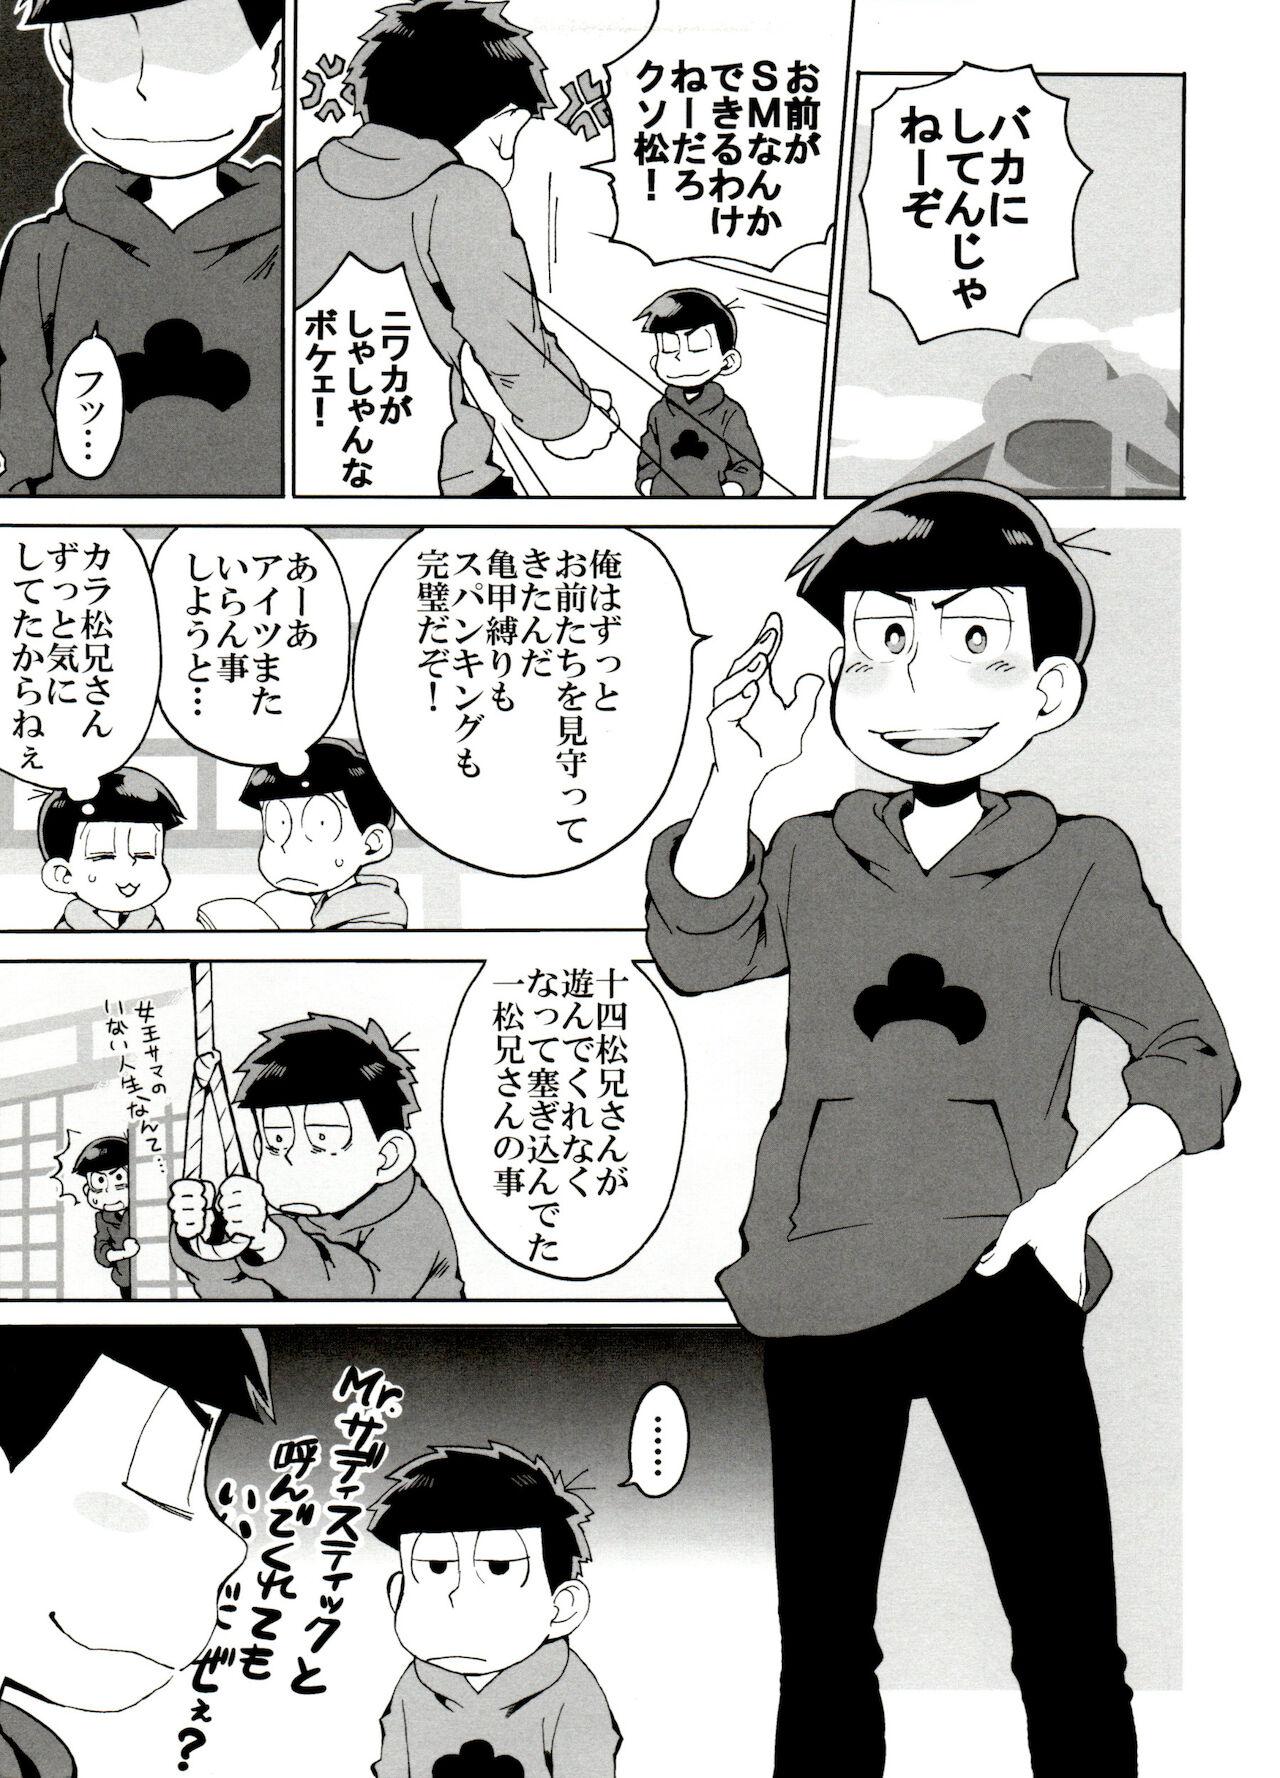 Hung SM Matsu 2 - Osomatsu san Banging - Page 5